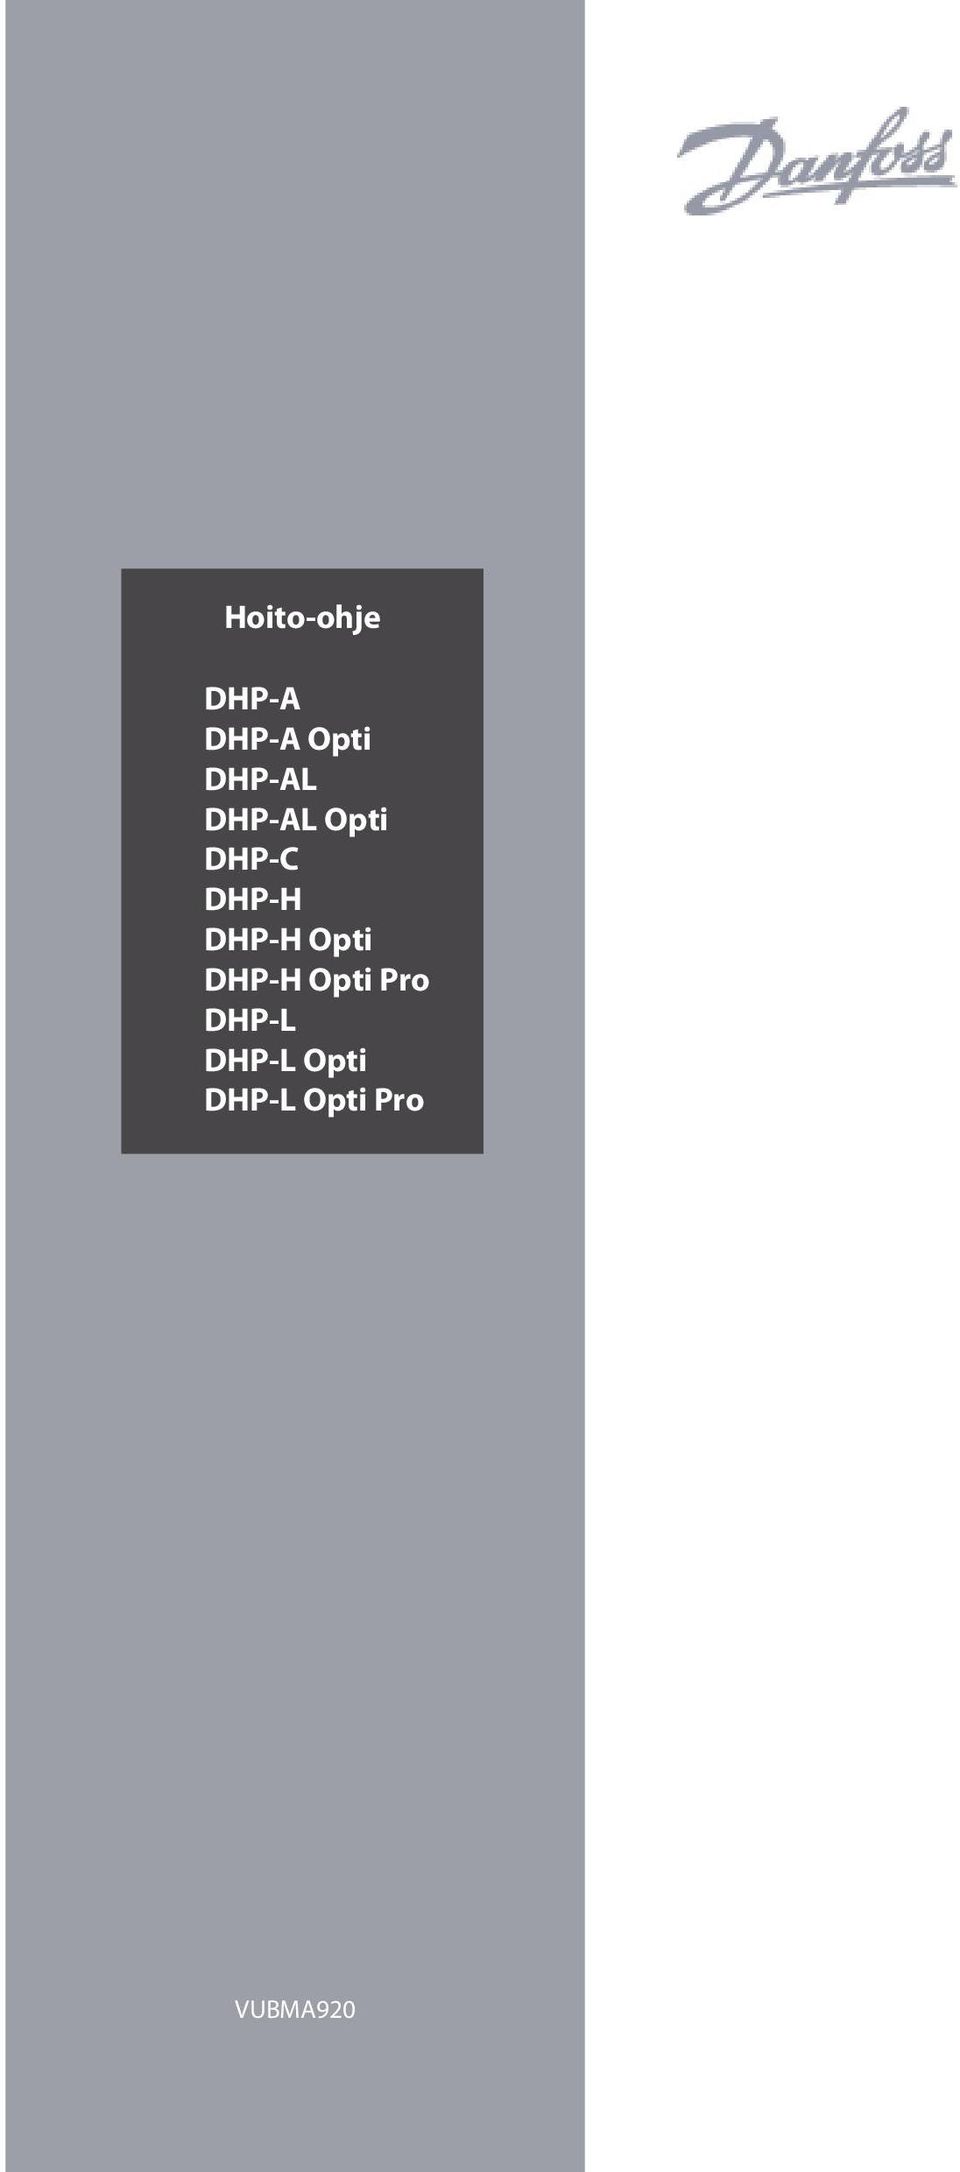 DHP-H Opti DHP-H Opti Pro DHP-L